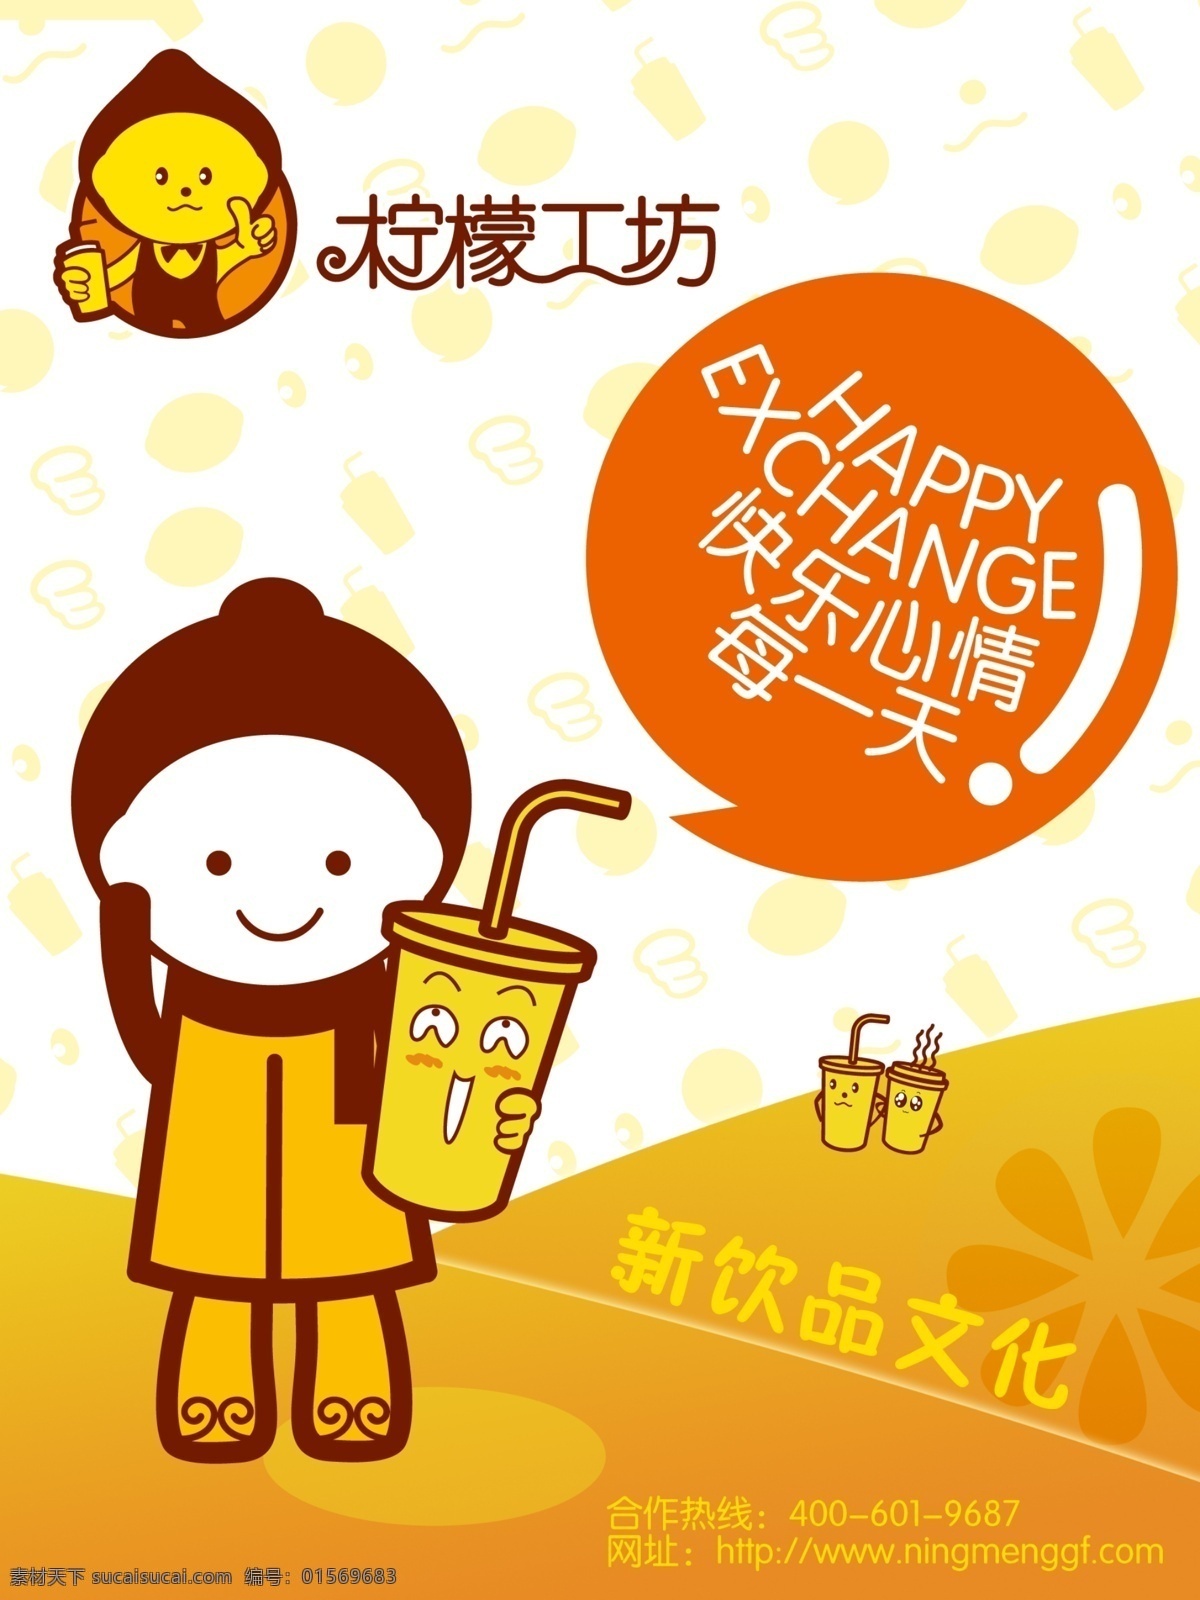 柠檬工坊广告 柠檬工坊 快餐 饮品 饮料杯 卡通小孩 广告画 文化墙 柠檬 笑脸 宣传画 广告设计模板 源文件